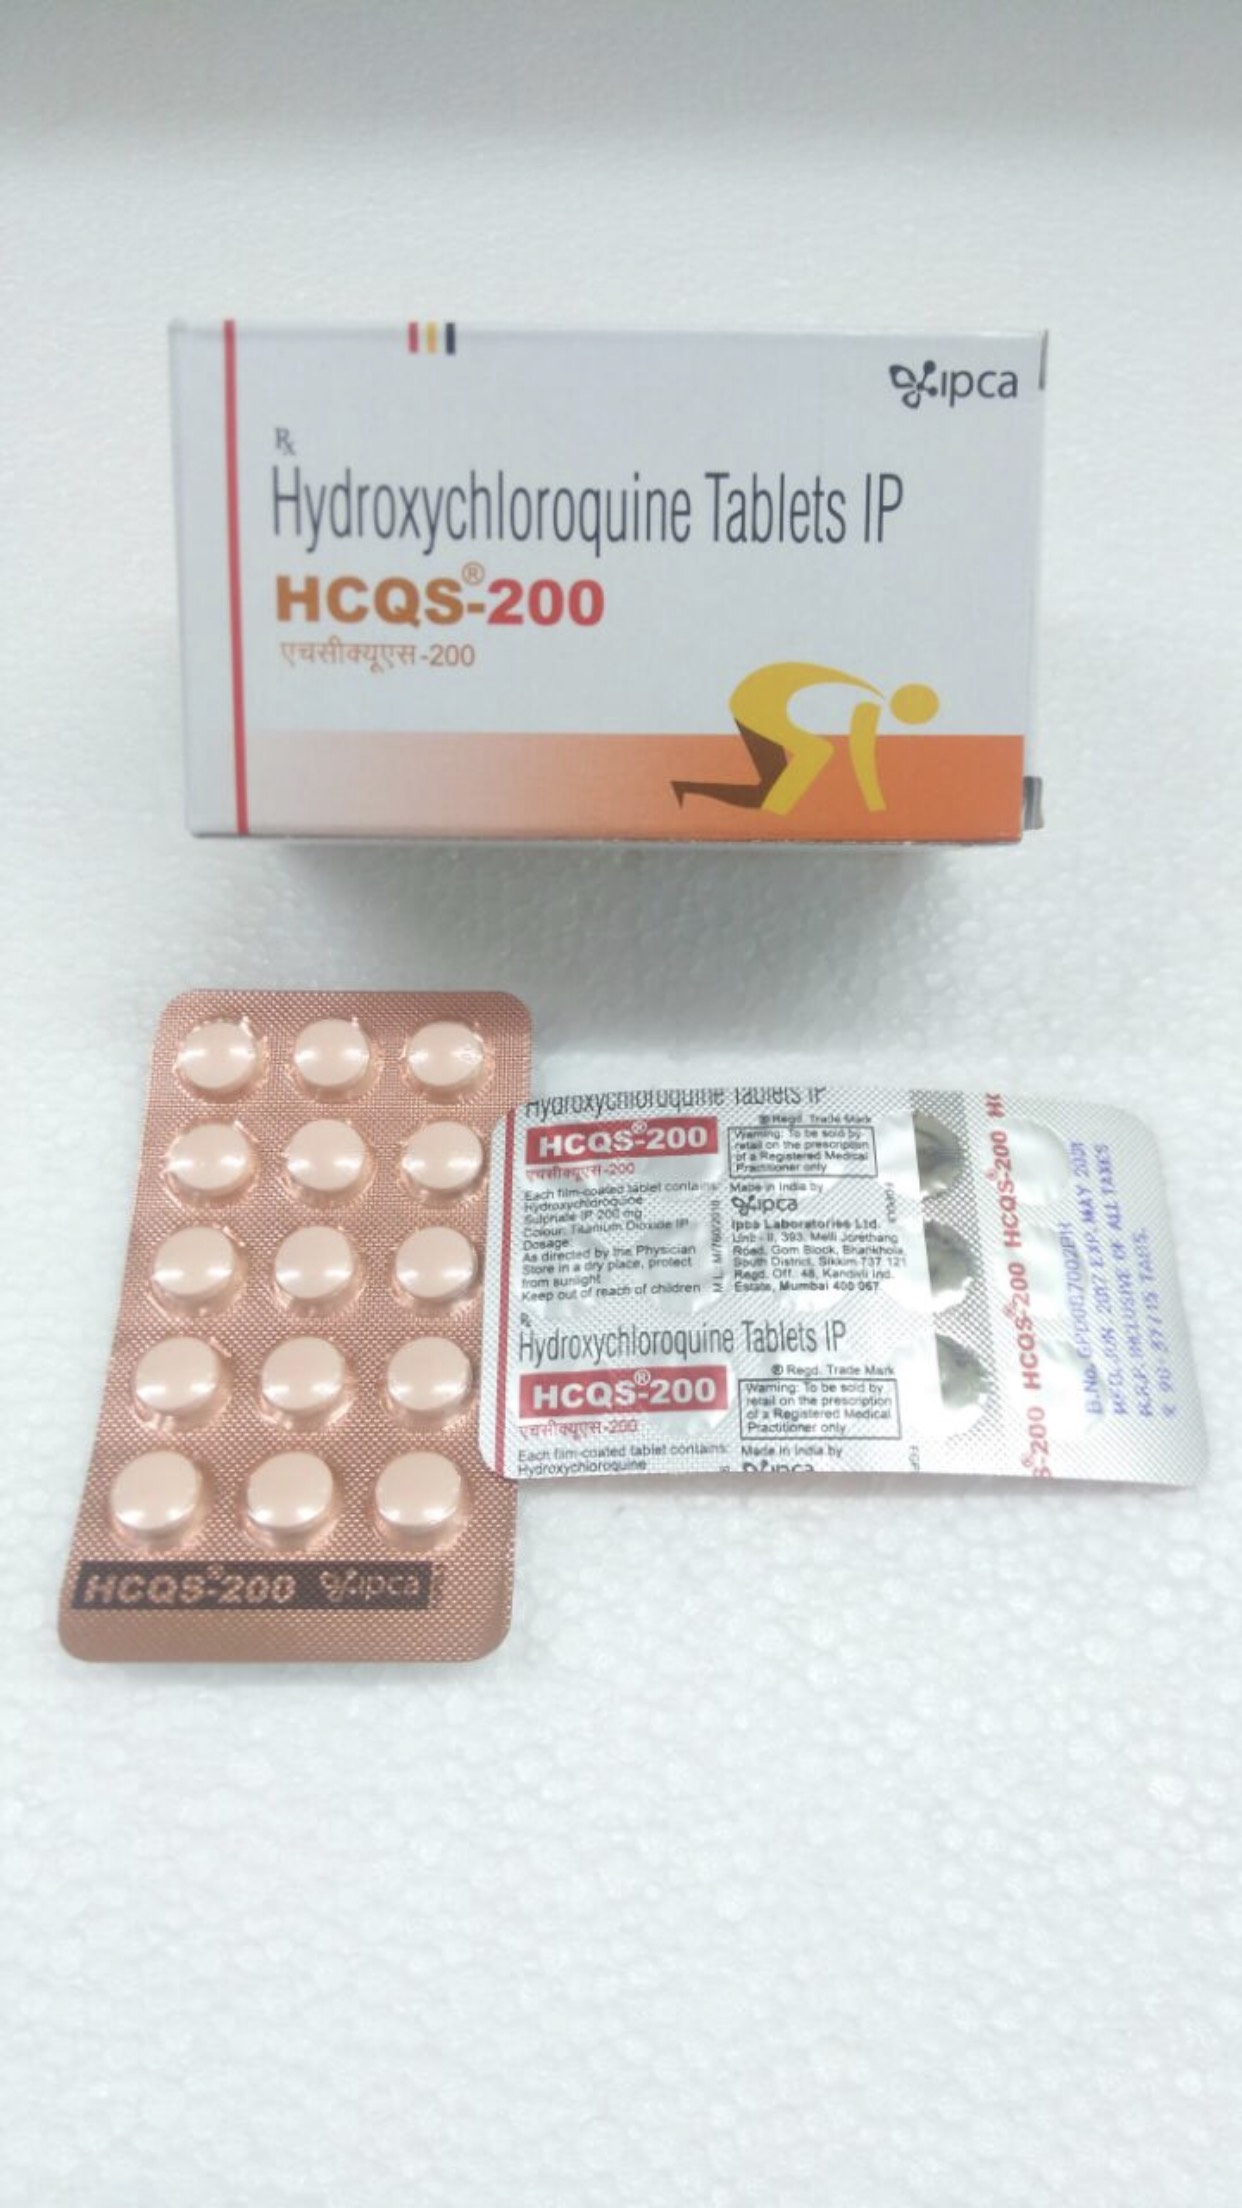 HCQS-200